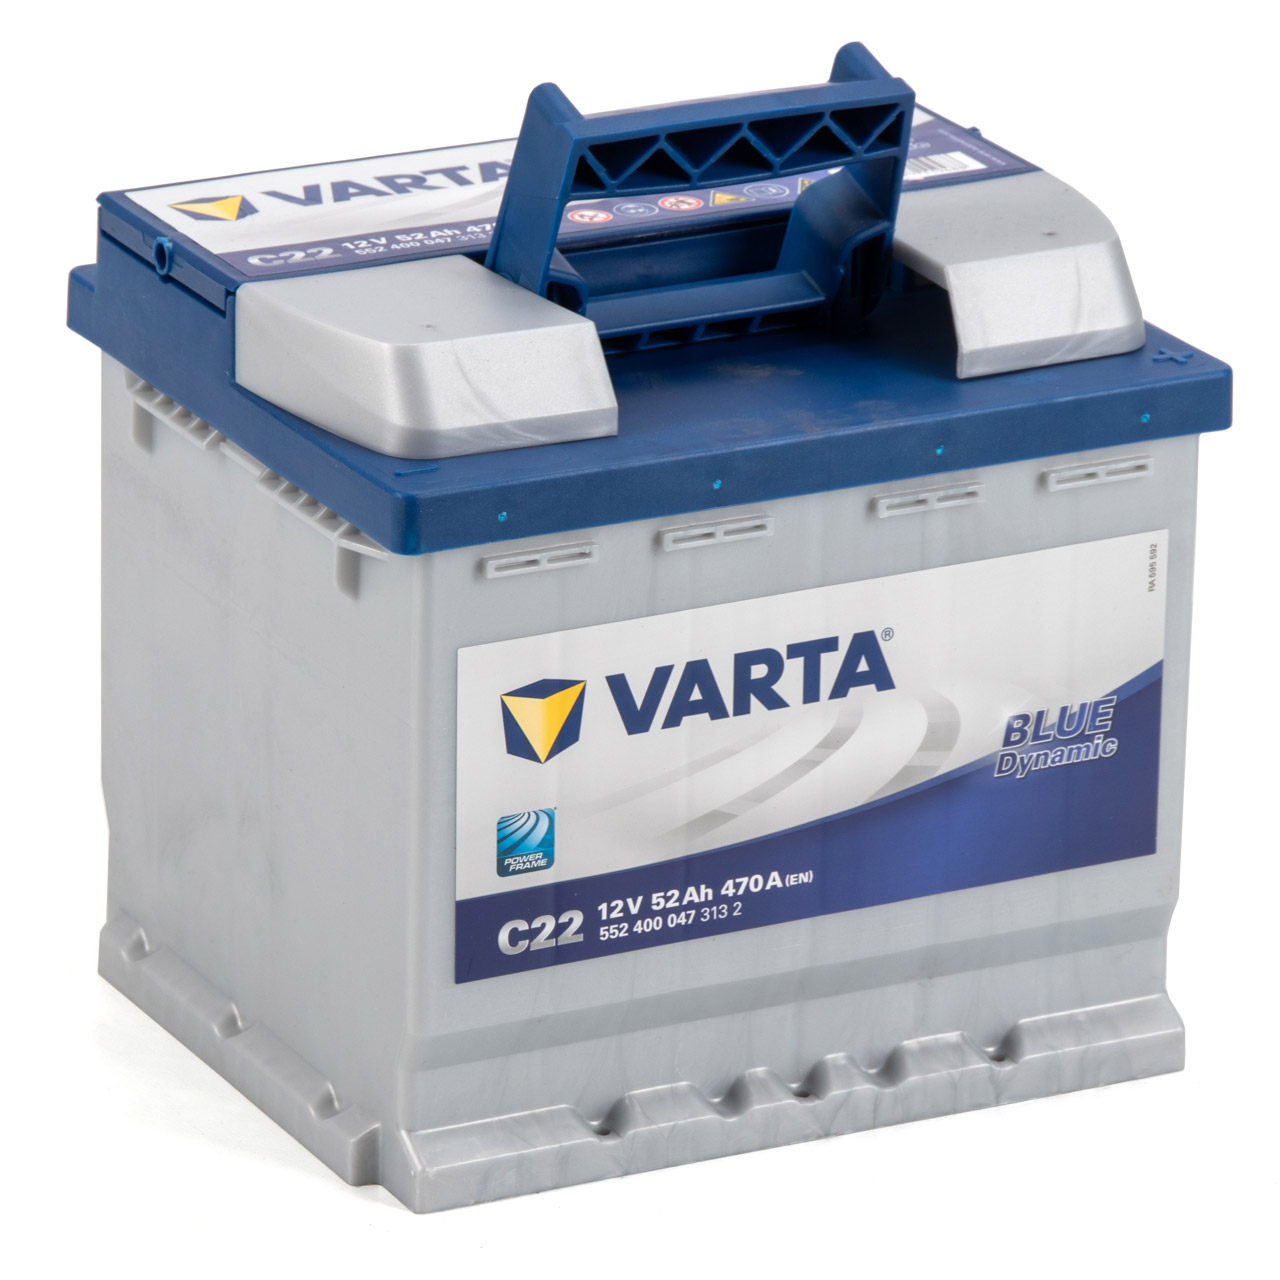 VARTA Starterbatterien / Autobatterien - 5524000473132 